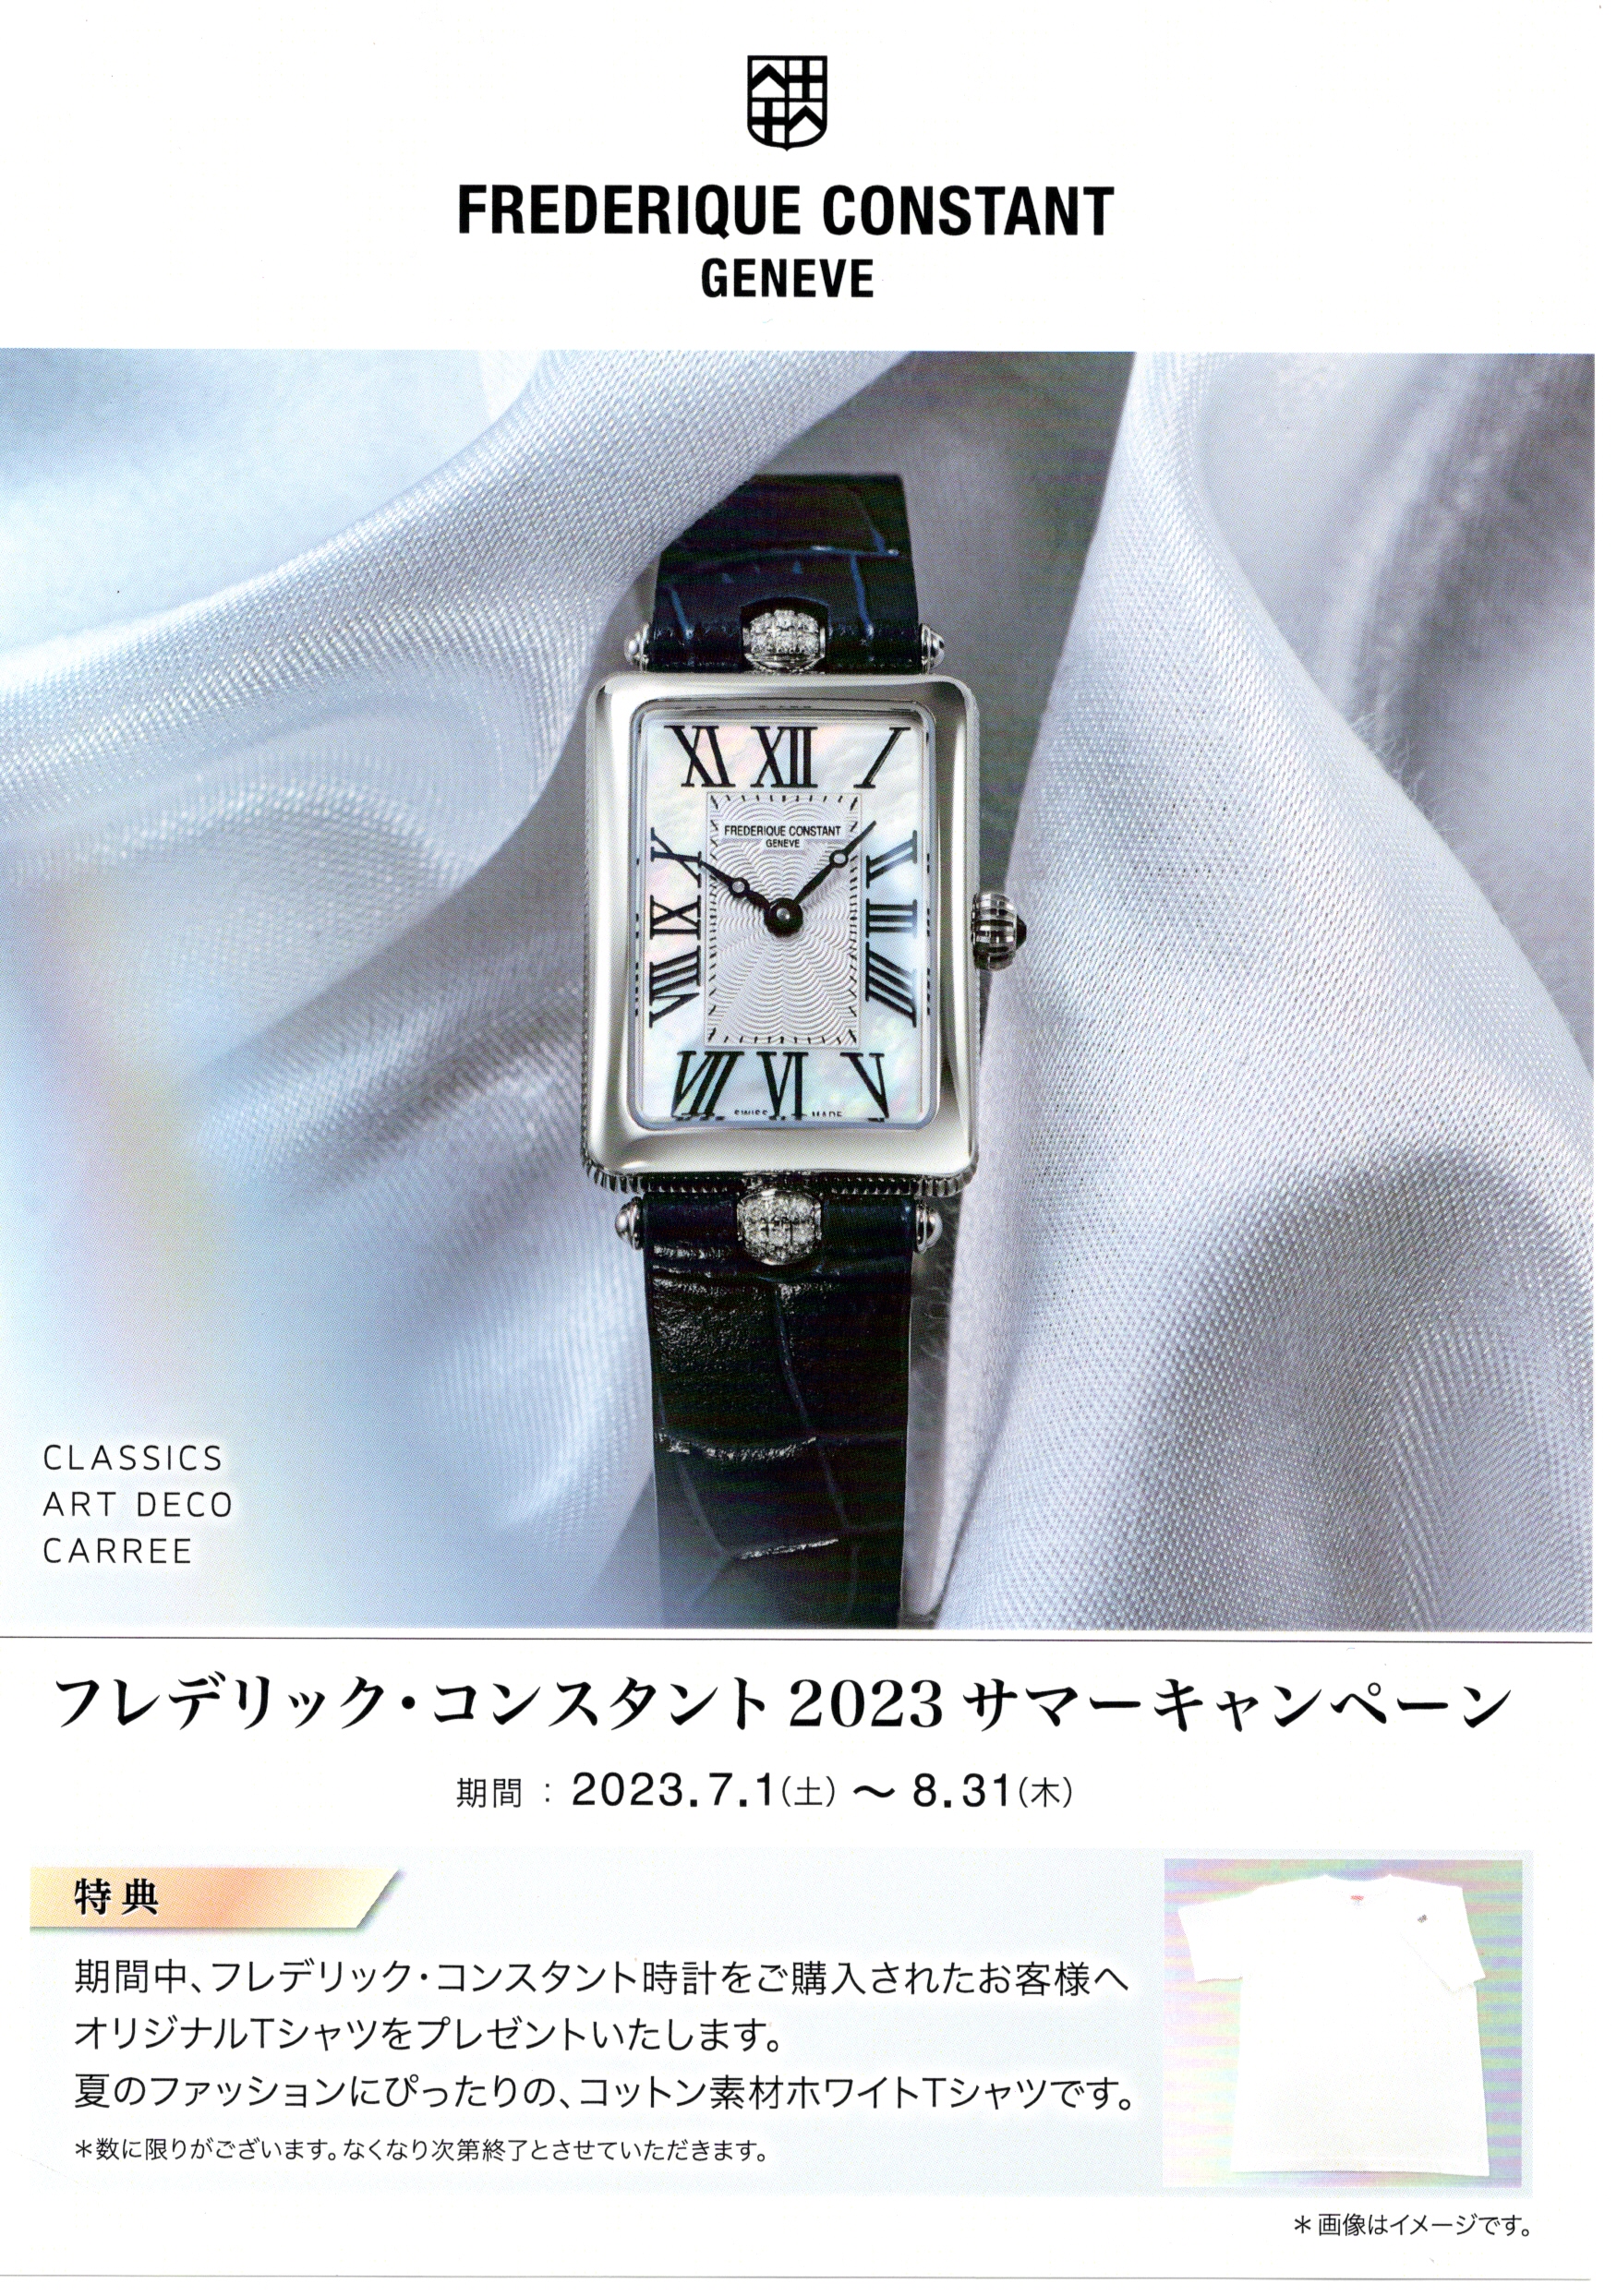 ファッション小物【クラシックカレ】フレデリックコンスタント 時計